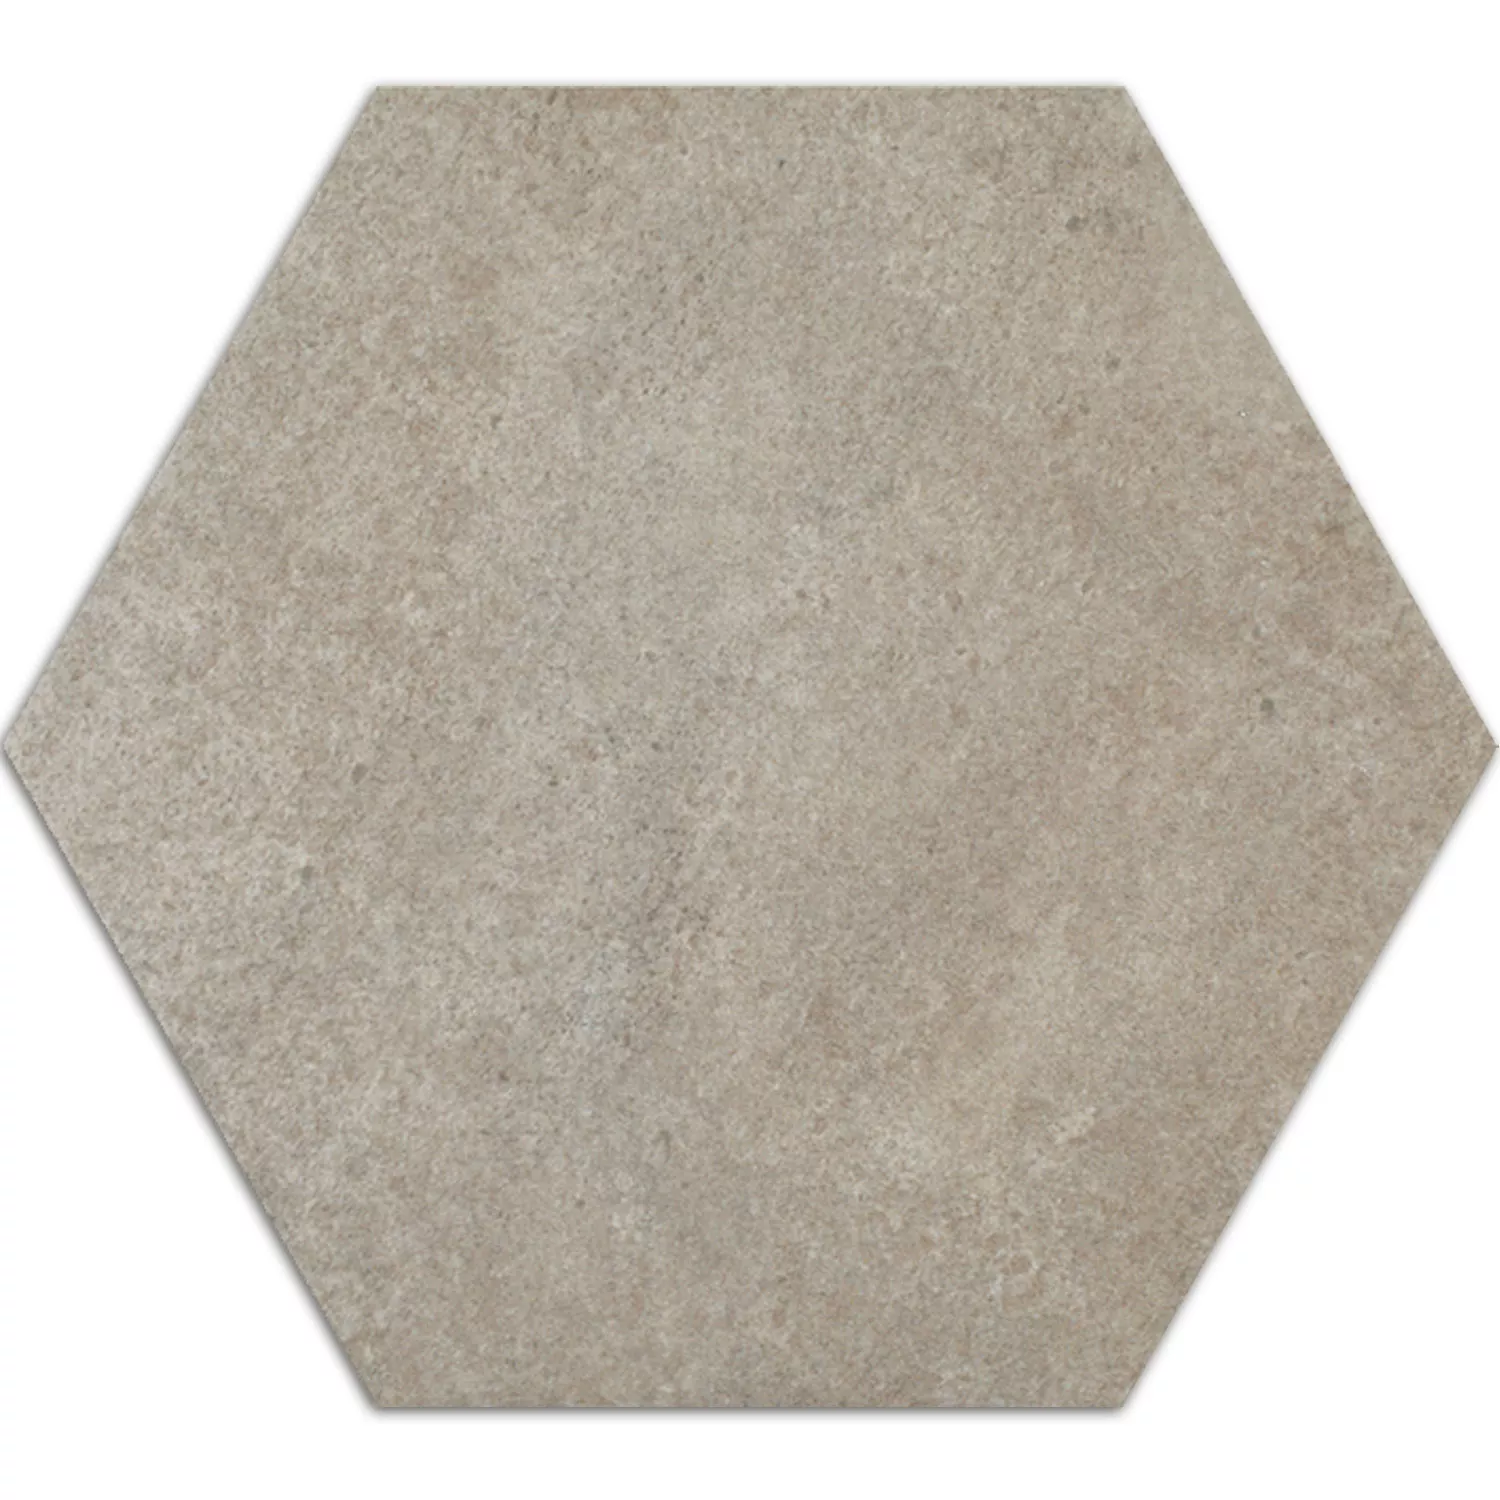 Cement Tiles Optic Hexagon Floor Tiles Atlanta Grey